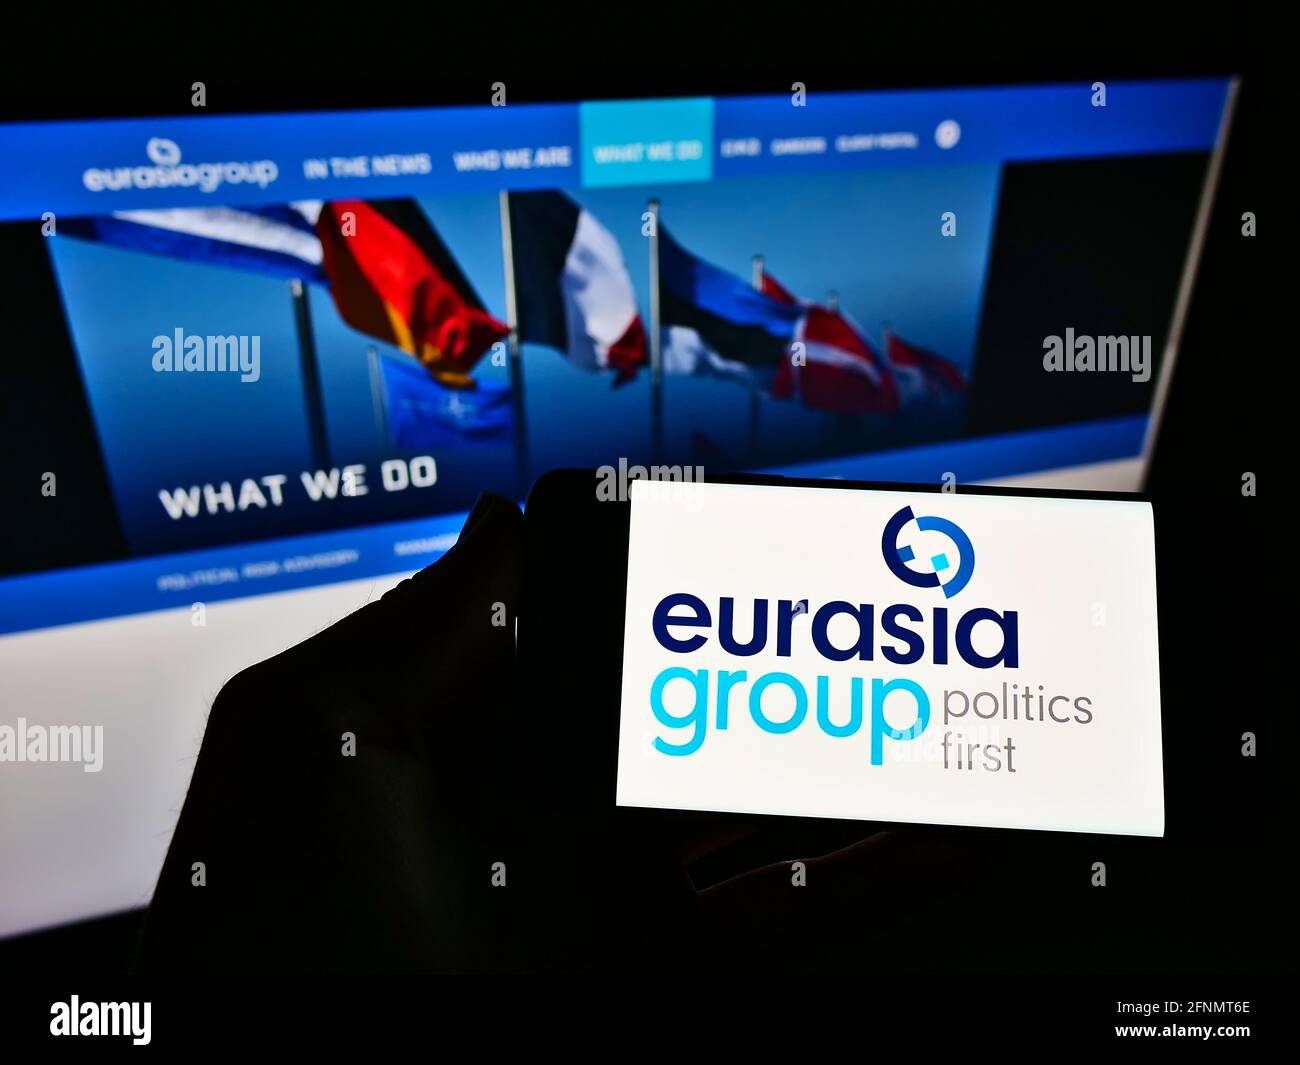 Persona che detiene smartphone con il logo della società di consulenza americana Eurasia Group Ltd sullo schermo di fronte al sito web aziendale. Mettere a fuoco il display del telefono. Foto Stock